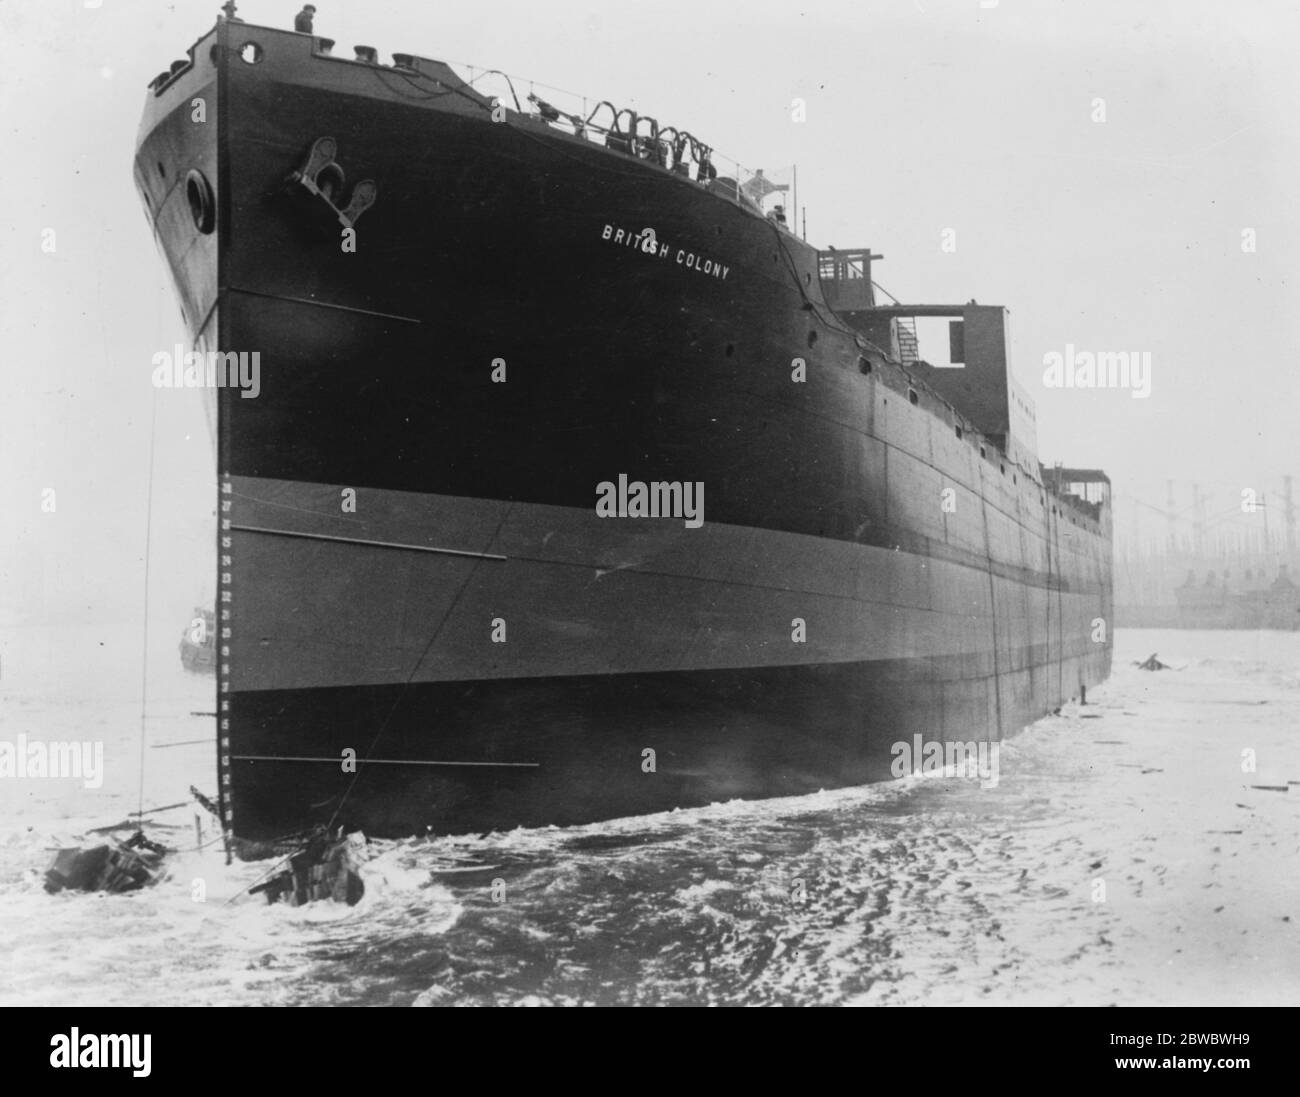 La sig.ra Amery Lauches New Steamer, British Colony, a Newcastle on Tyne. La nave, che può trasportare oltre 10,000 tonnellate, dopo il lancio. 5 aprile 1927 Foto Stock